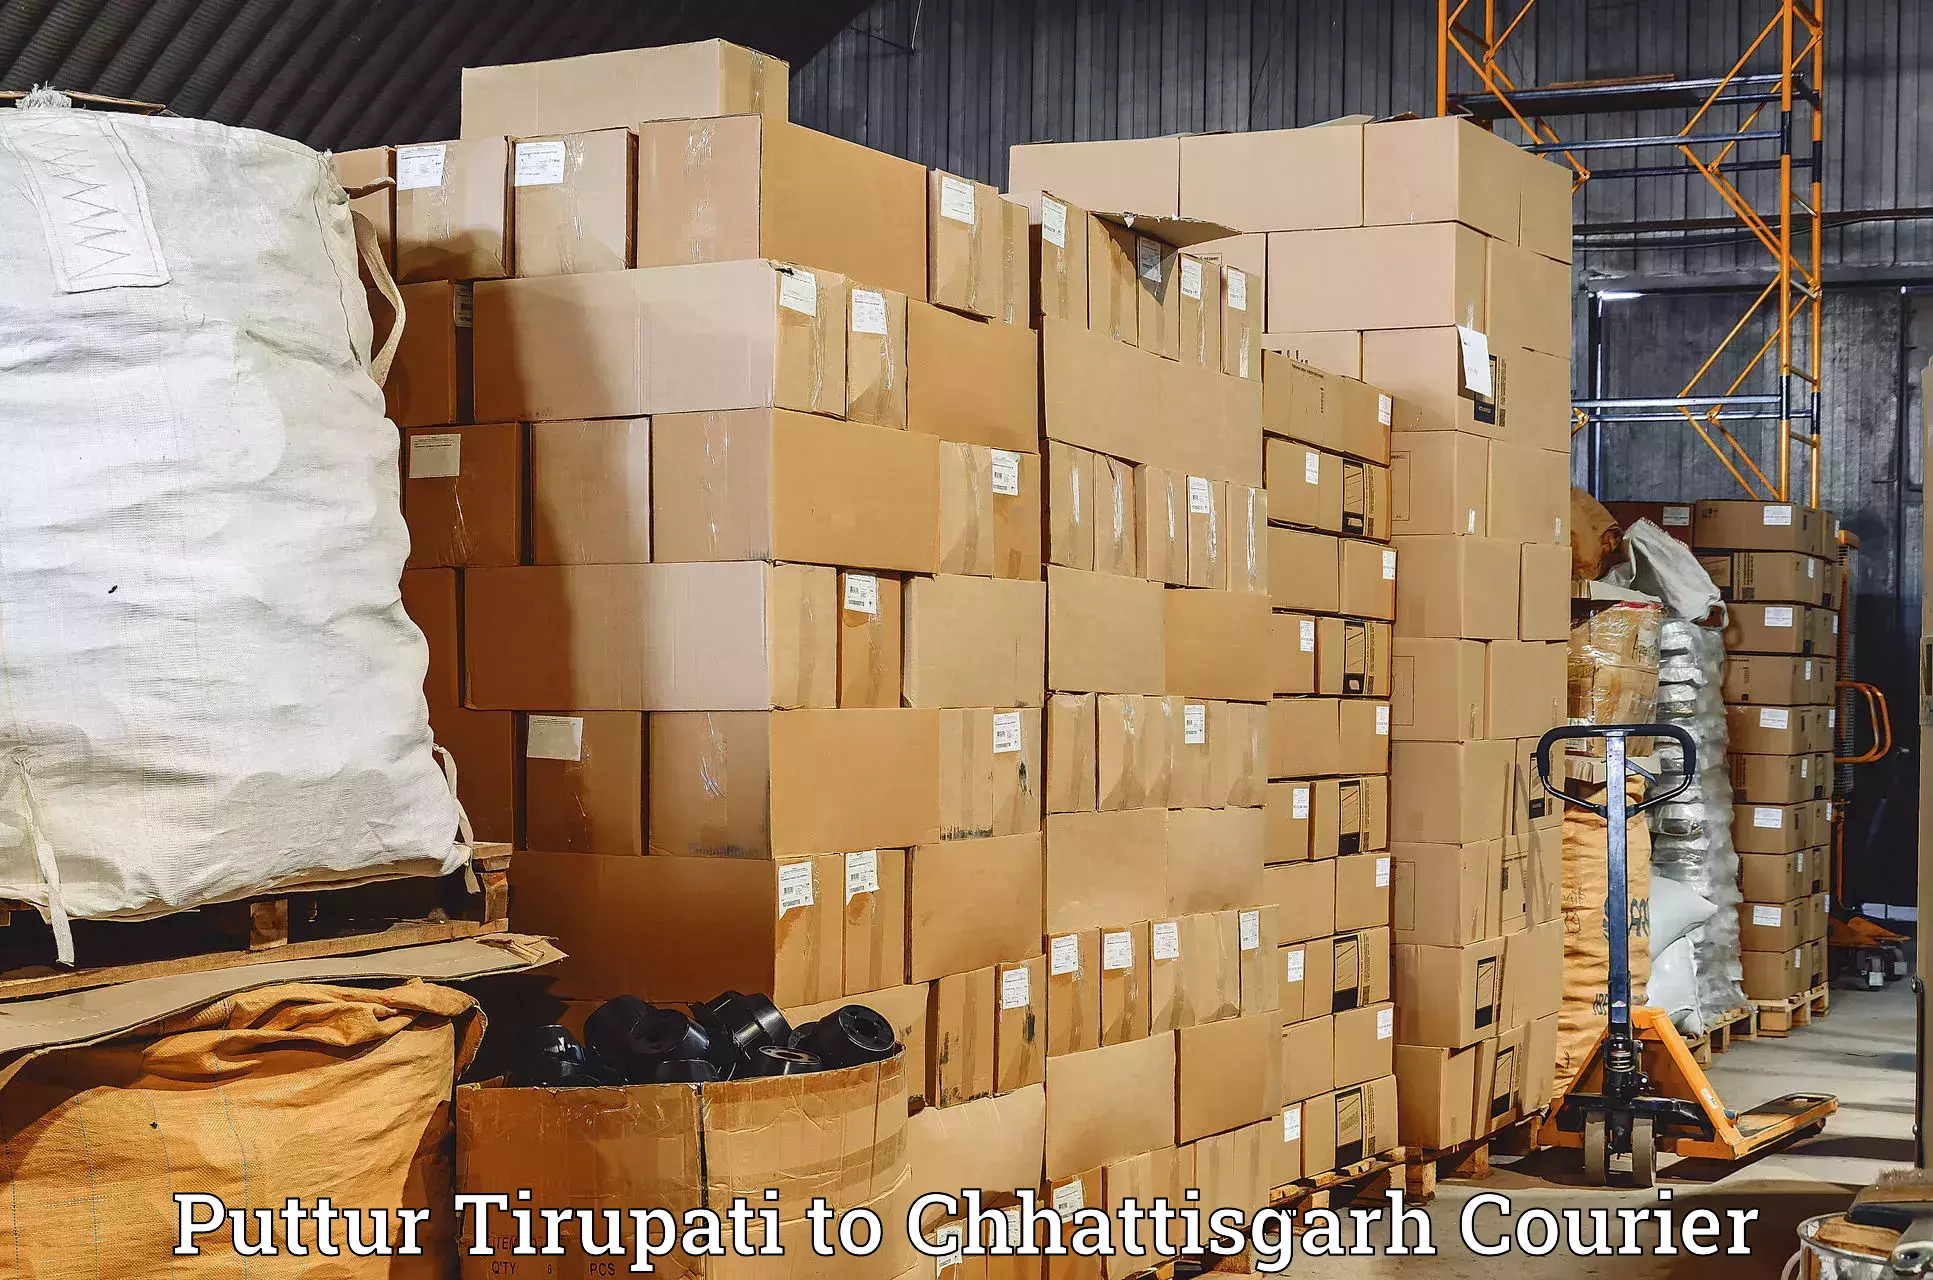 Cash on delivery service Puttur Tirupati to Tilda